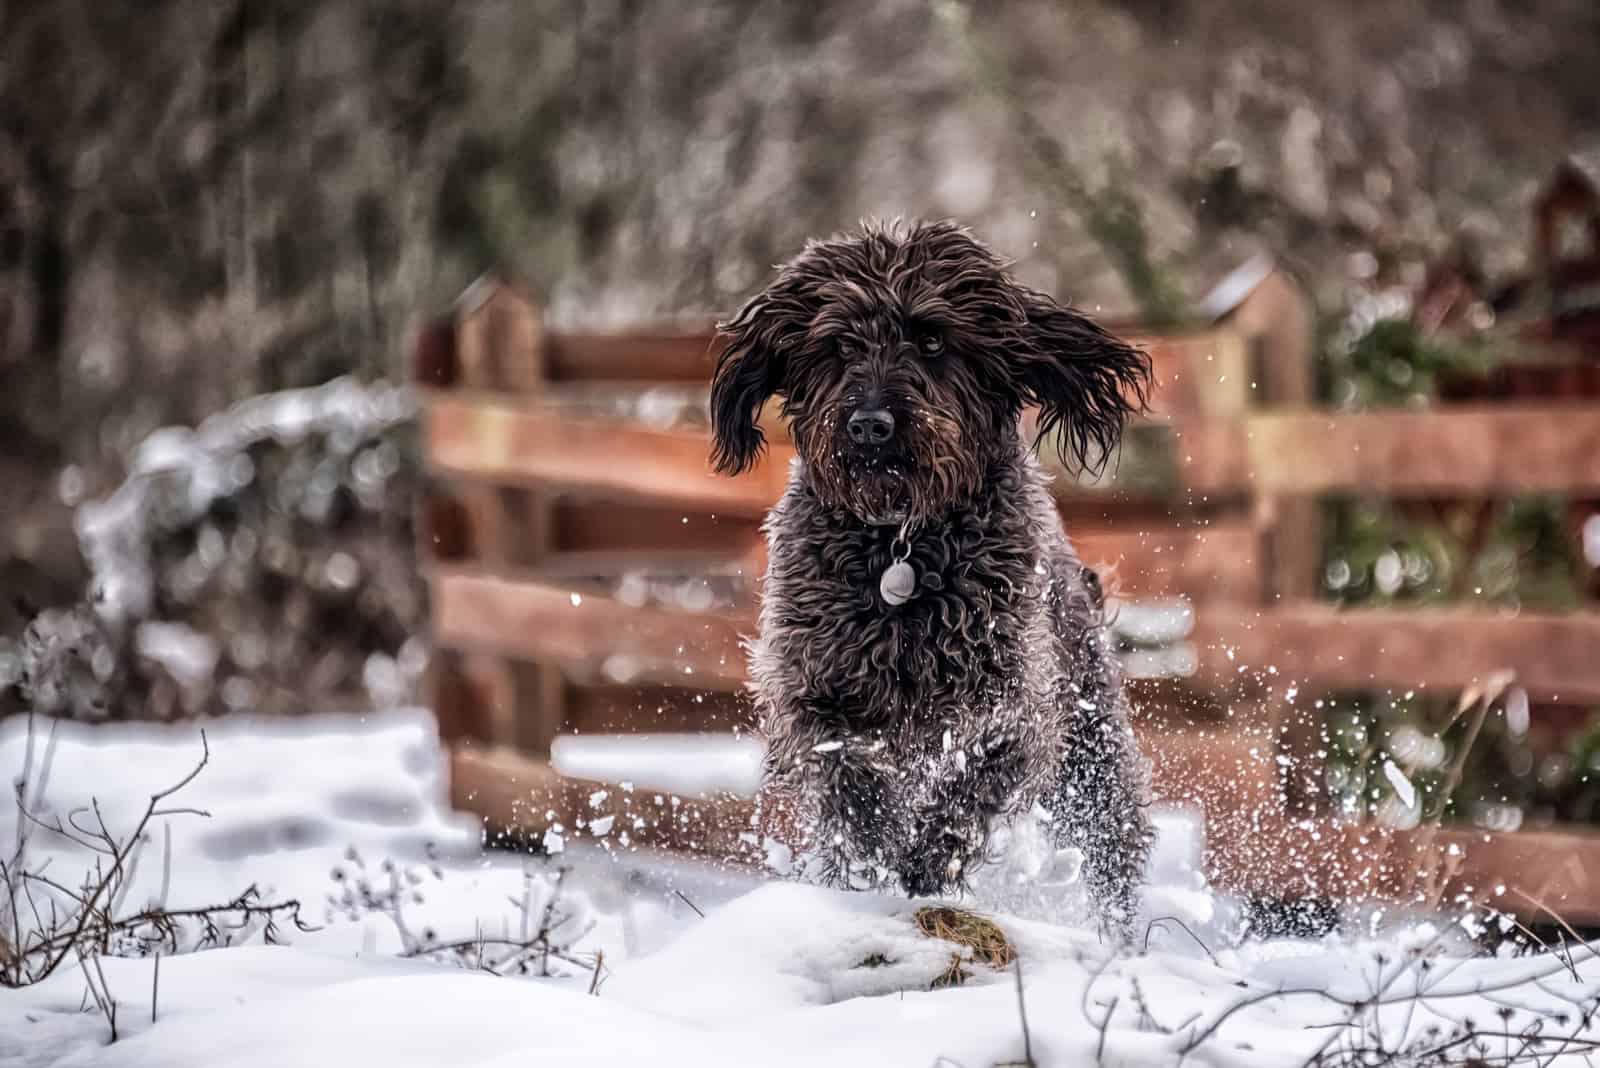 labradoodle runs across the snow